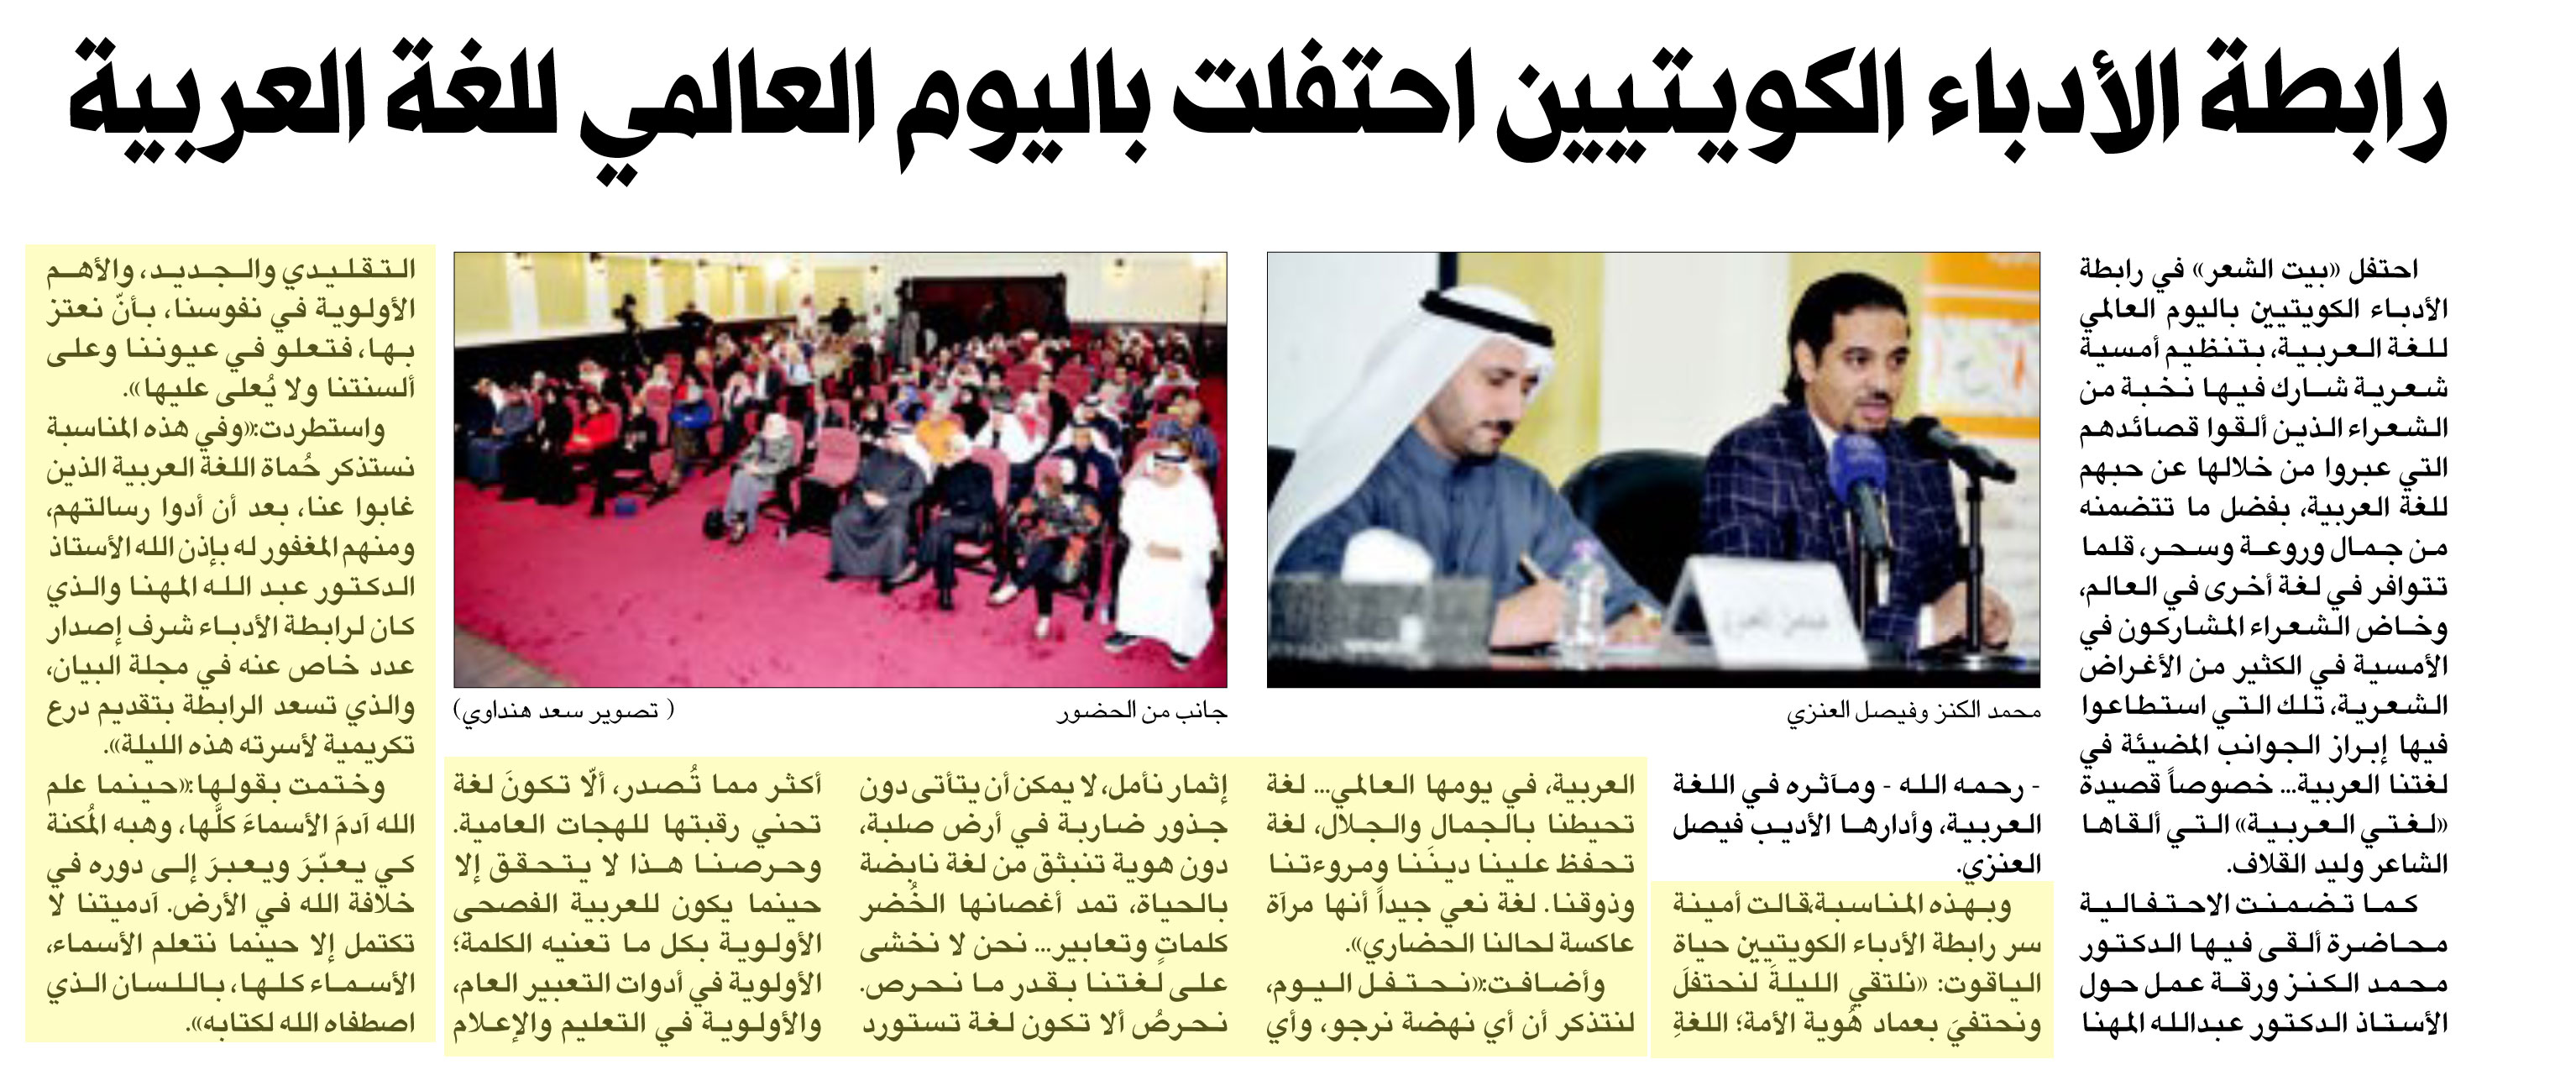 الراي رابطة الأدباء الكويتيين احتفلت باليوم العالمي للغة العربية